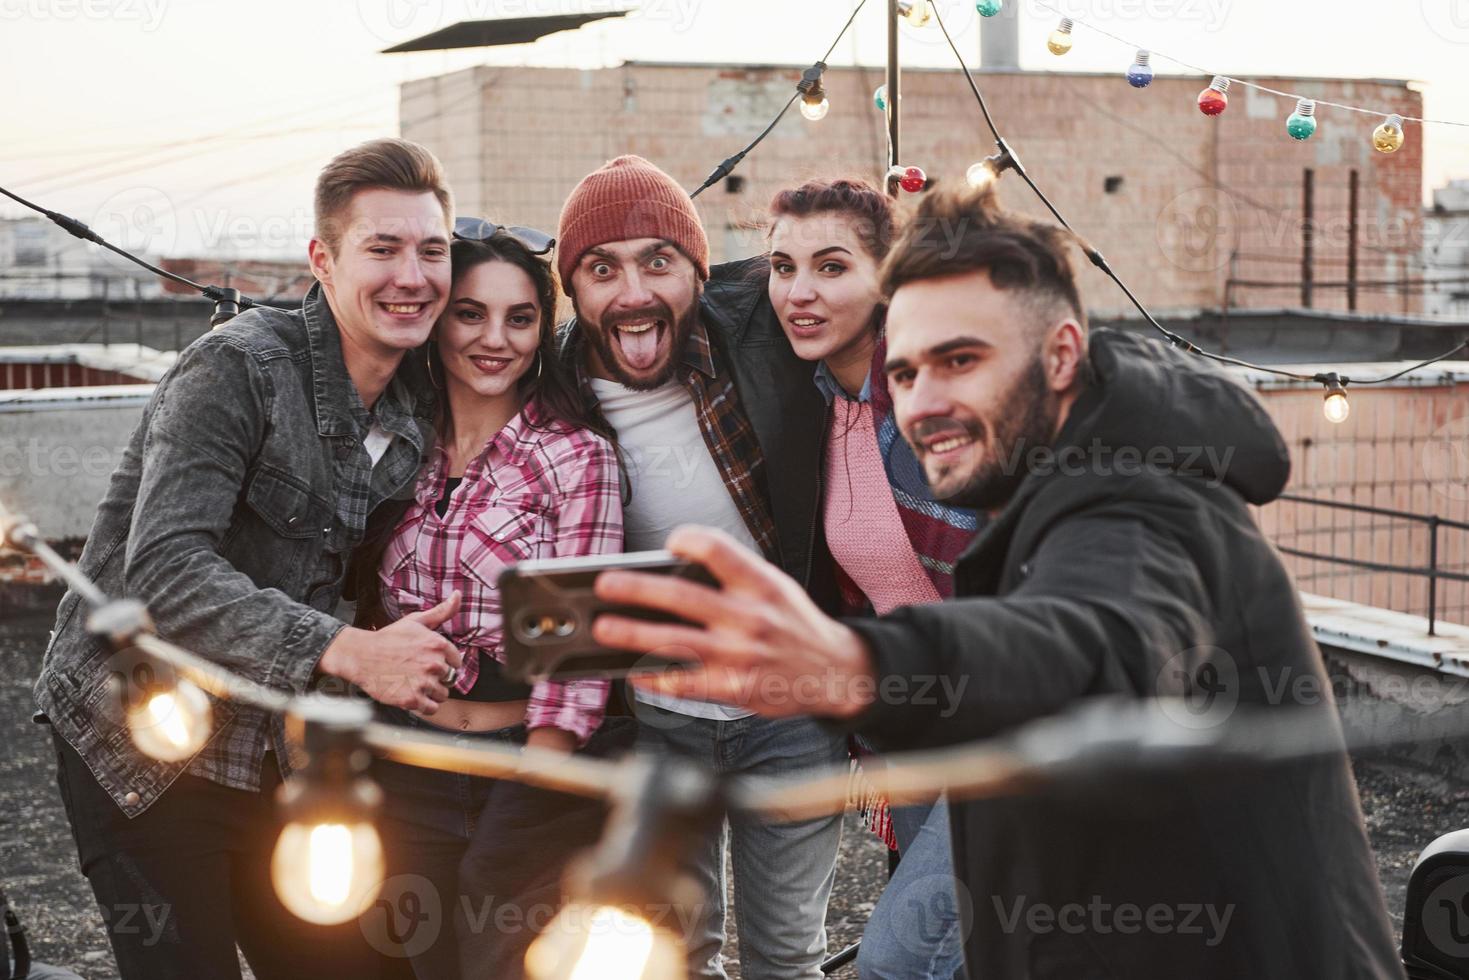 killen i mitten gör roliga ansikten. grupp unga glada vänner har roligt, kramar varandra och tar selfie på taket med dekorerade glödlampor foto